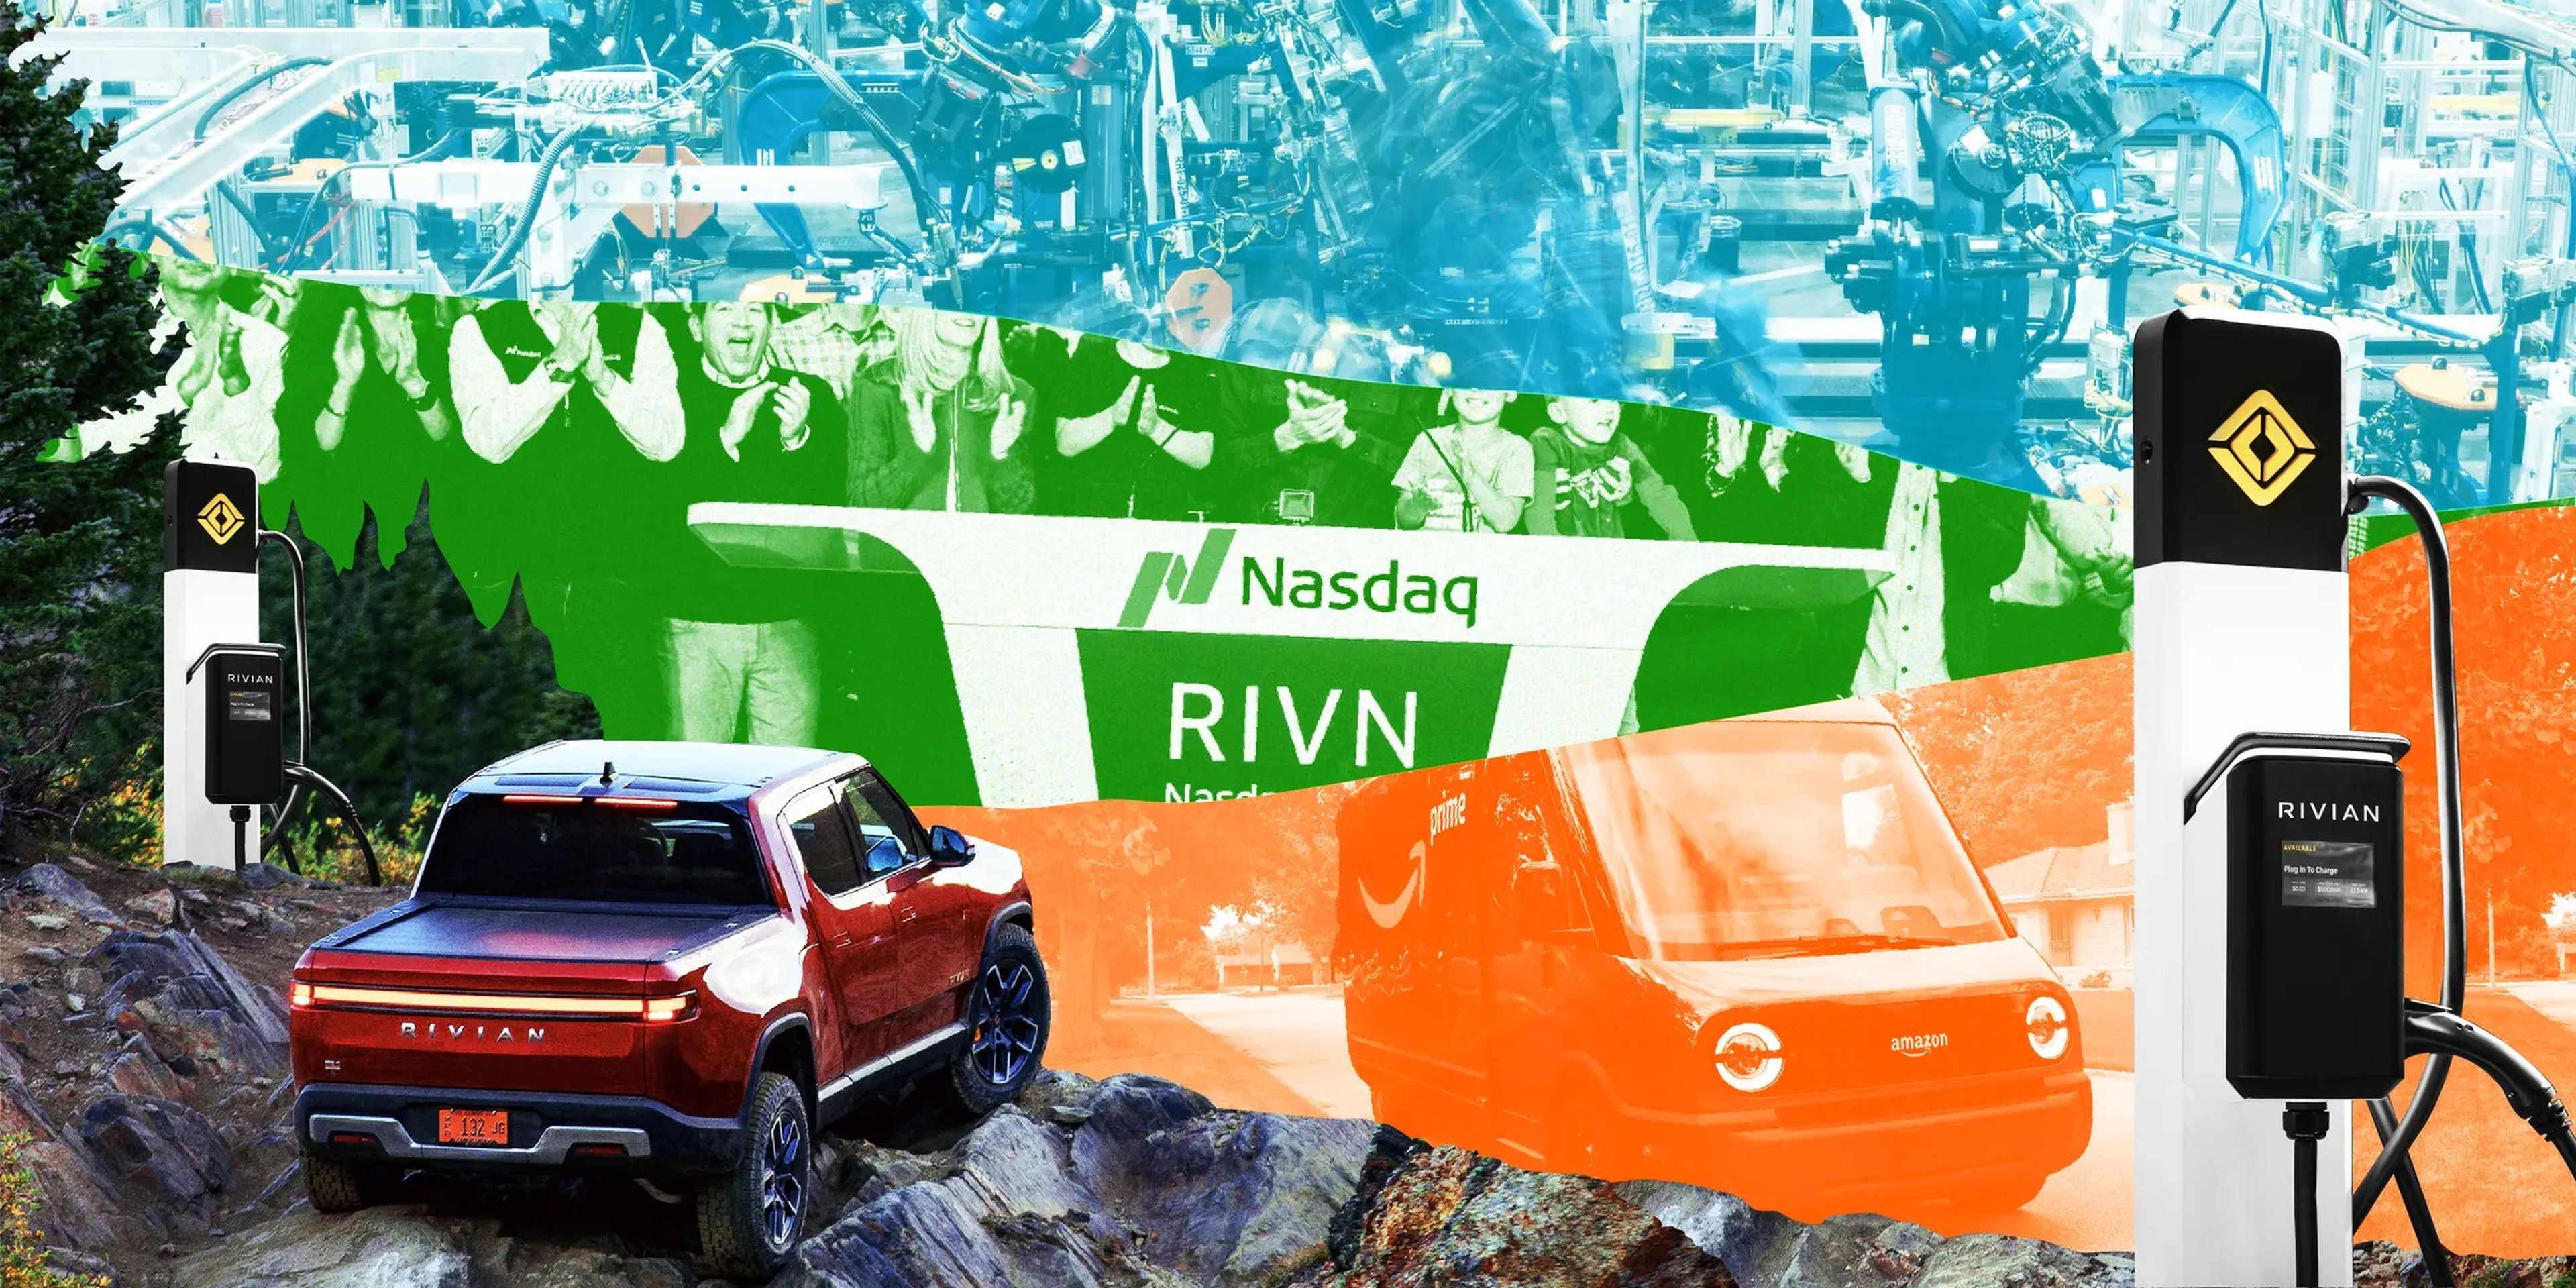 Camioneta Rivian mirando al borde de un acantilado rodeado por 2 estaciones de carga Rivian, enmarcando fragmentos de fotos azules, verdes y naranjas de una fábrica Rivian, IPO, y el camión Amazon.